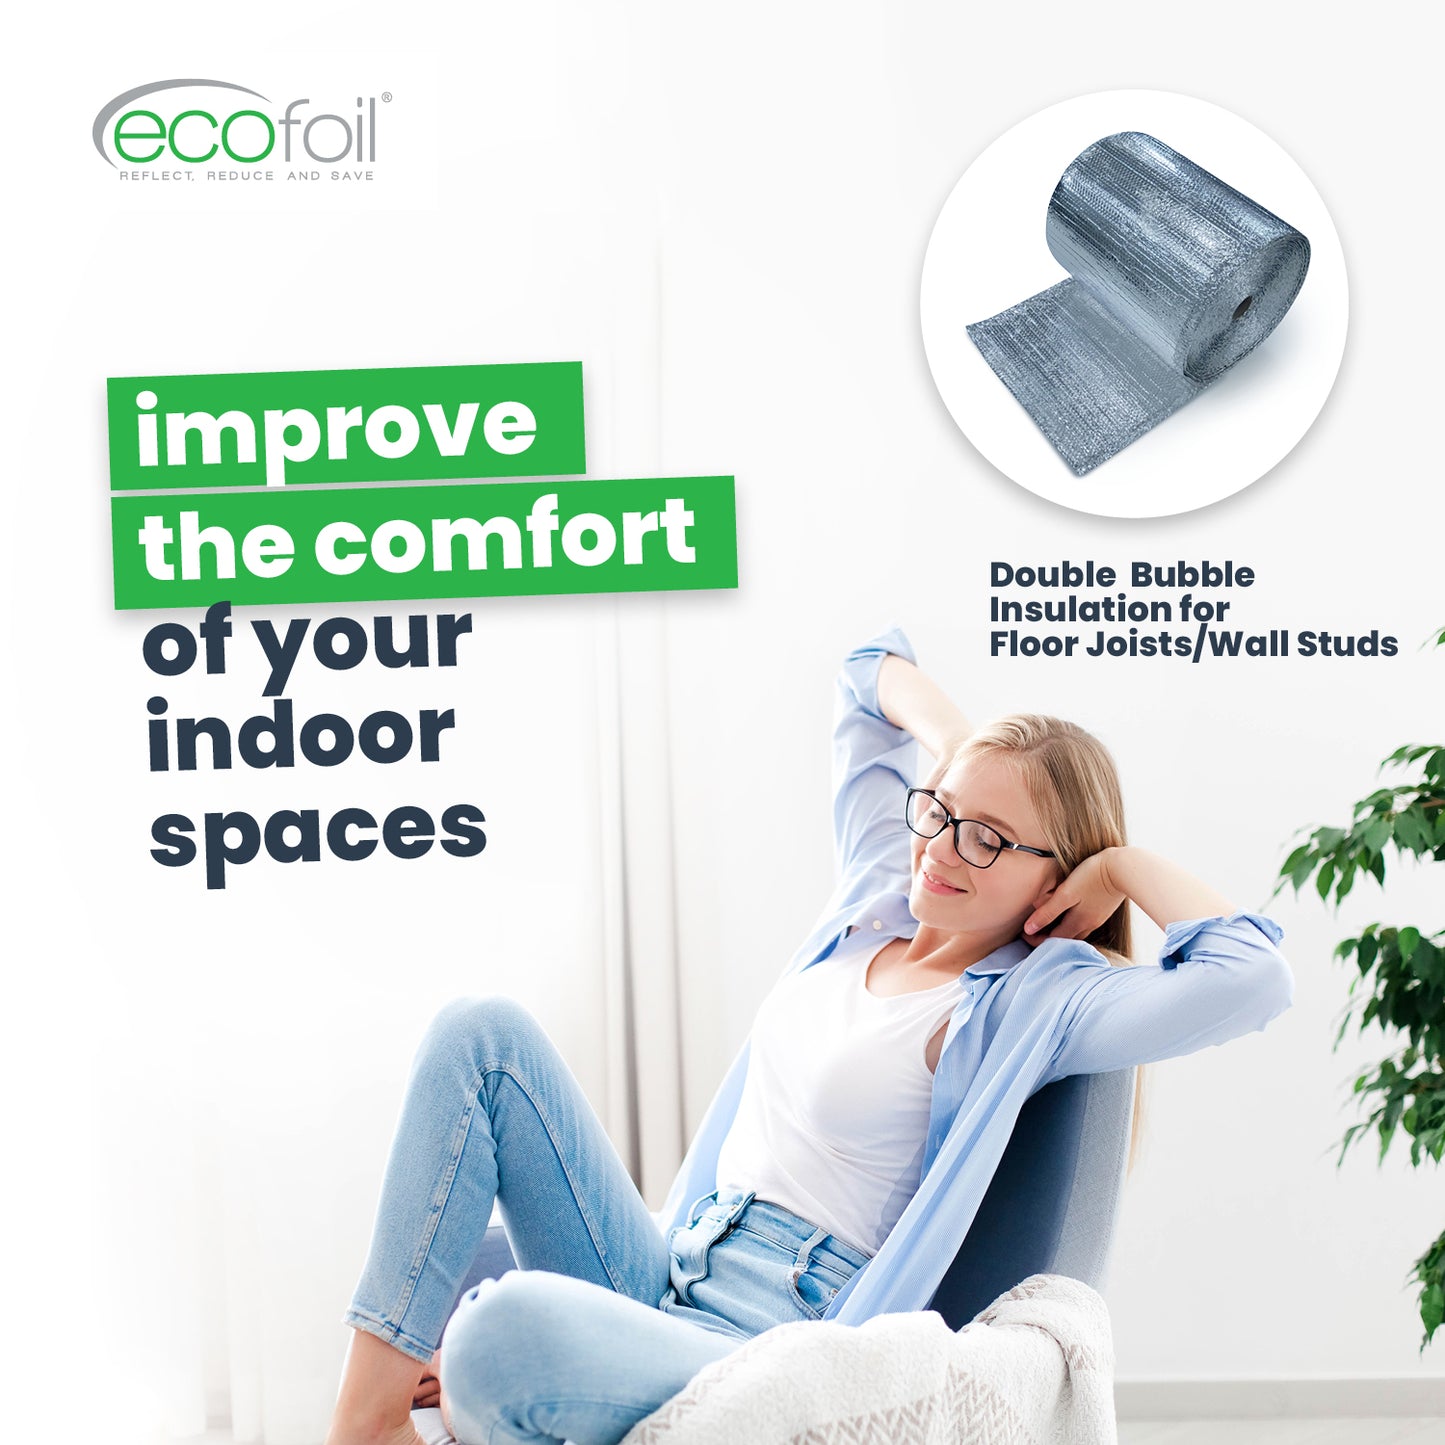 improve the comfort of indoor spaces with floor joist bubble insulation